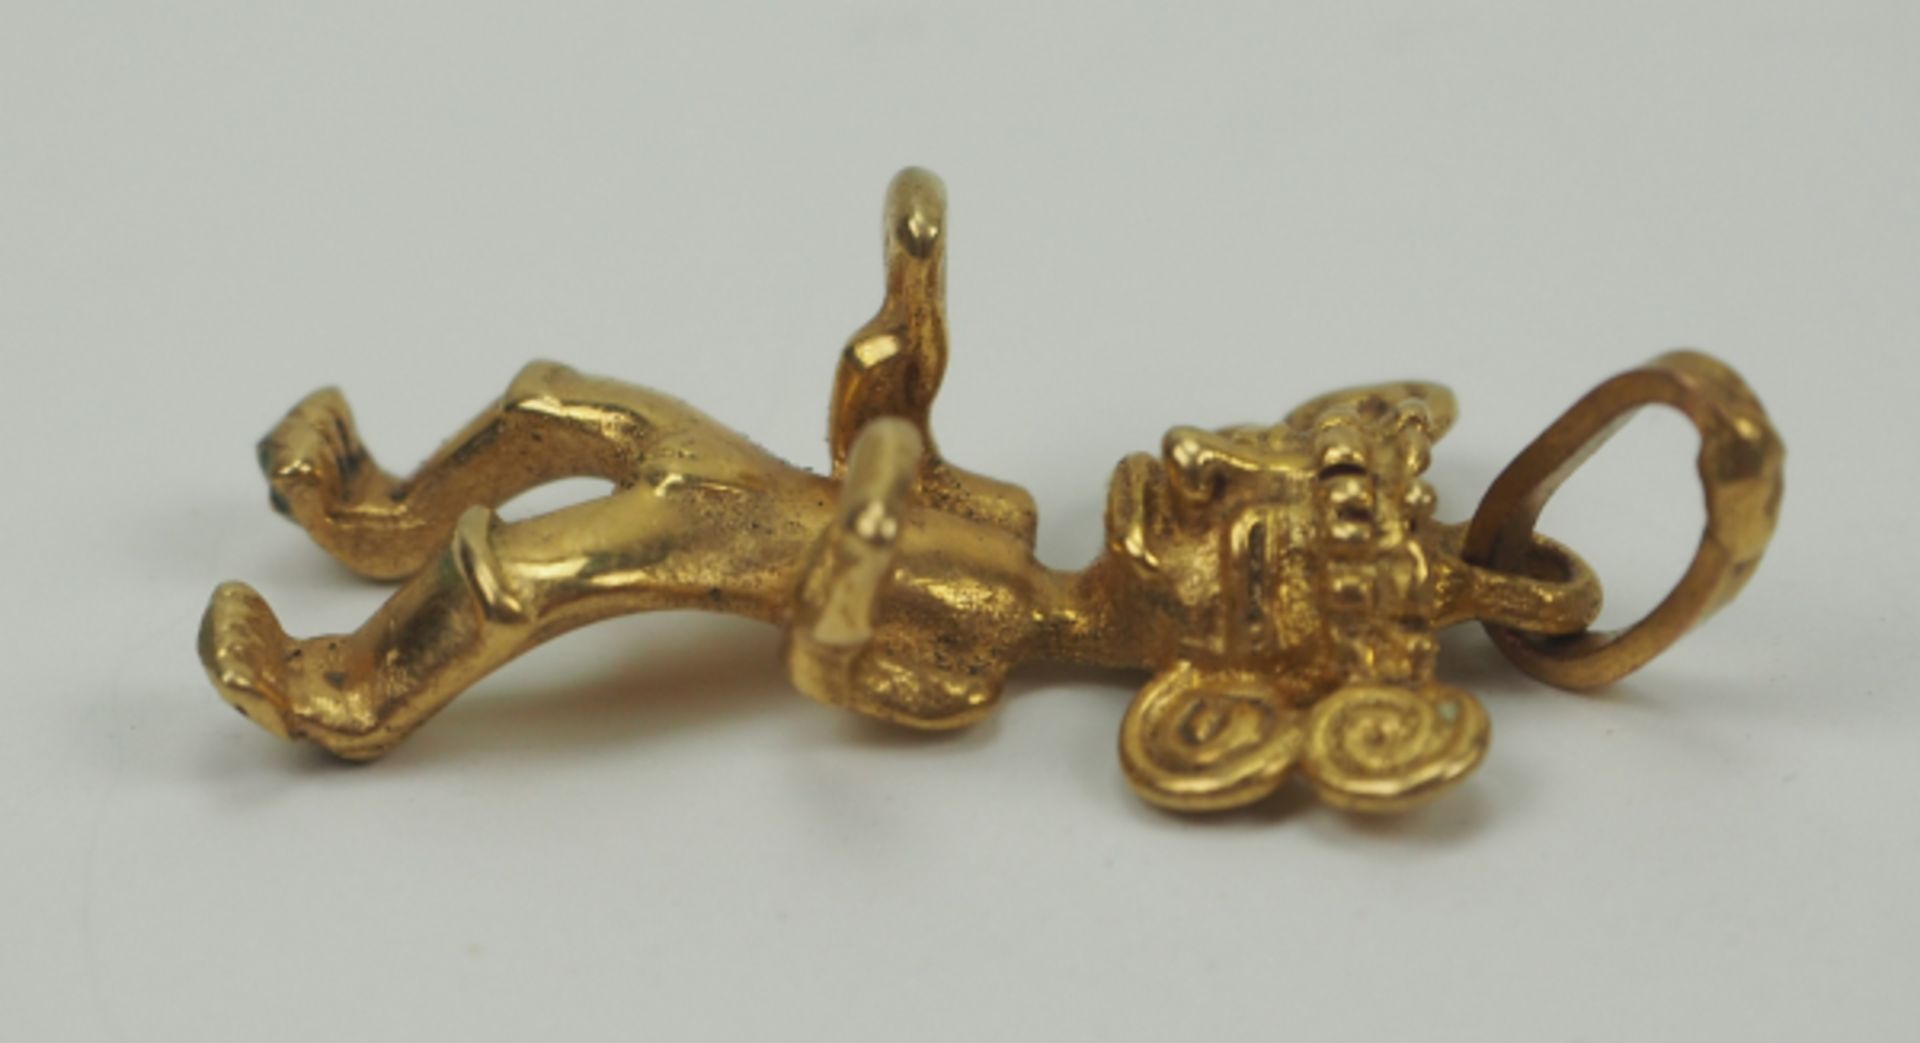 Lateinamerika - Goldfiguren Anhänger.Gold, lokale Fertigung, ungemarkt, Höhe 25 mm, 2,26 g. - Bild 3 aus 3